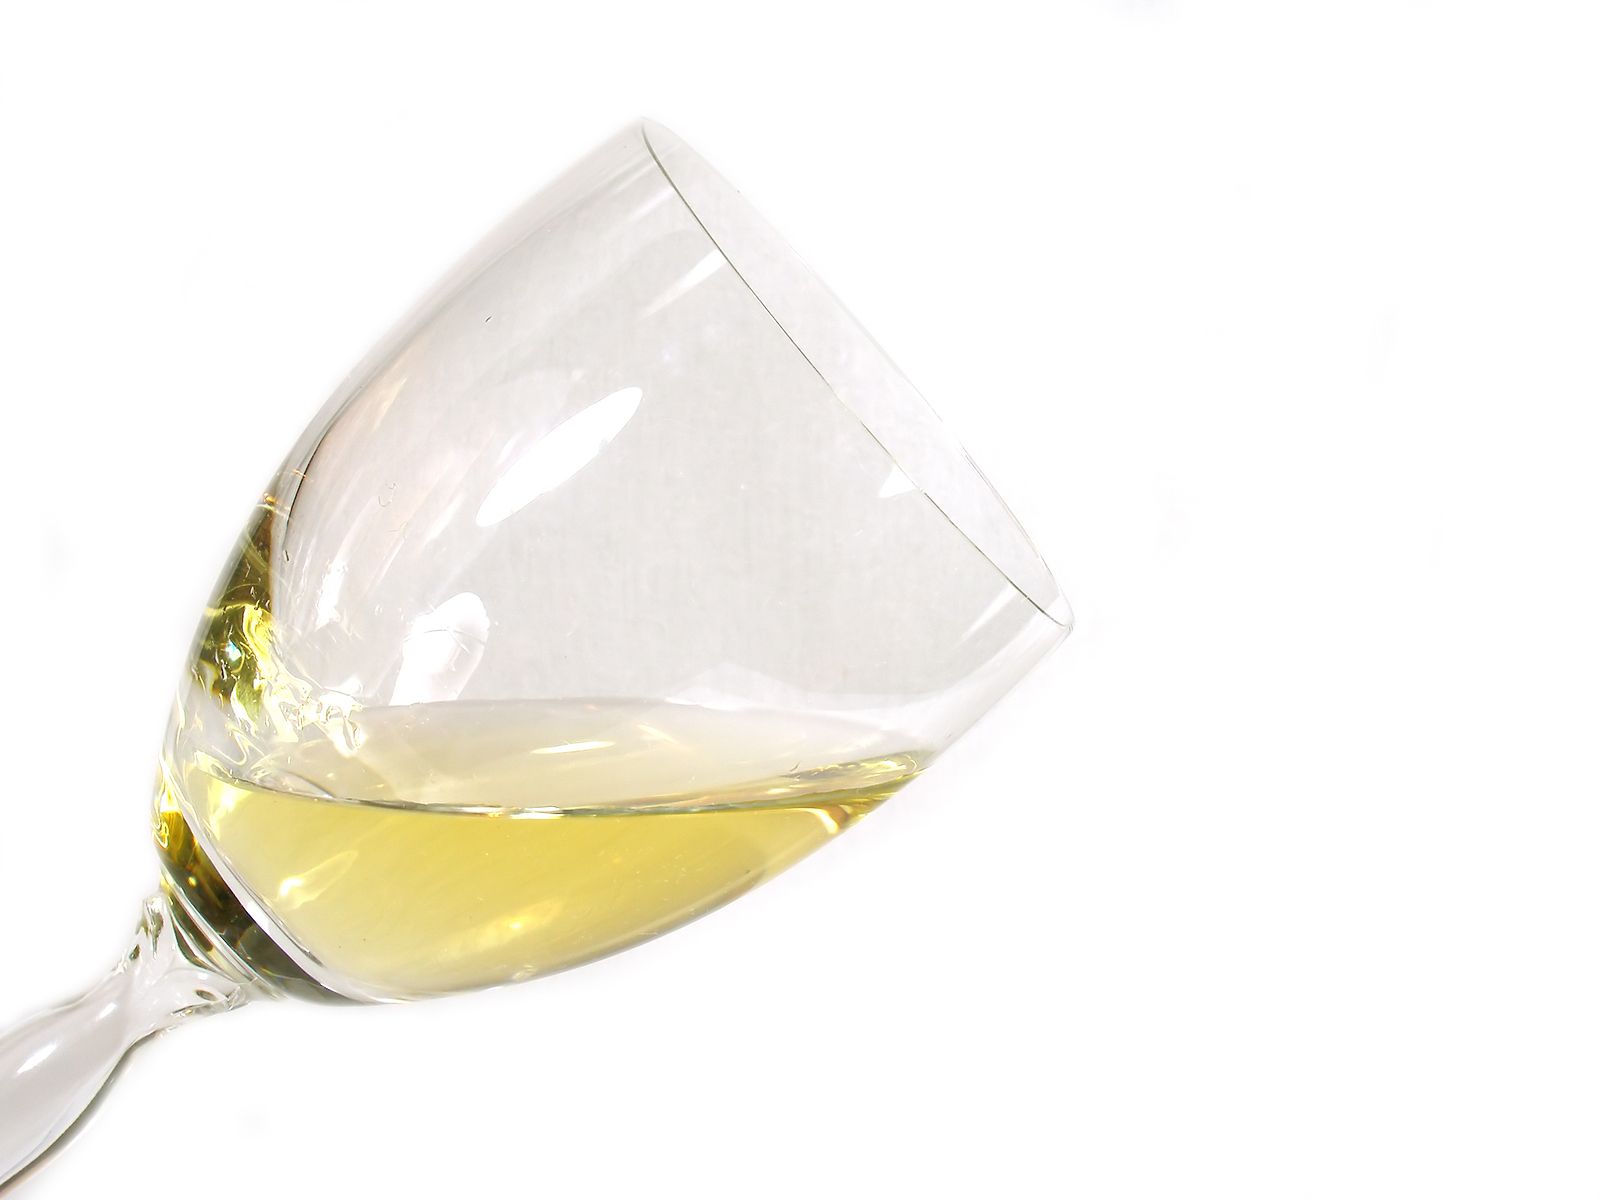 Los vinos generosos se definen en el Reglamento del Consejo Regulador como vinos secos